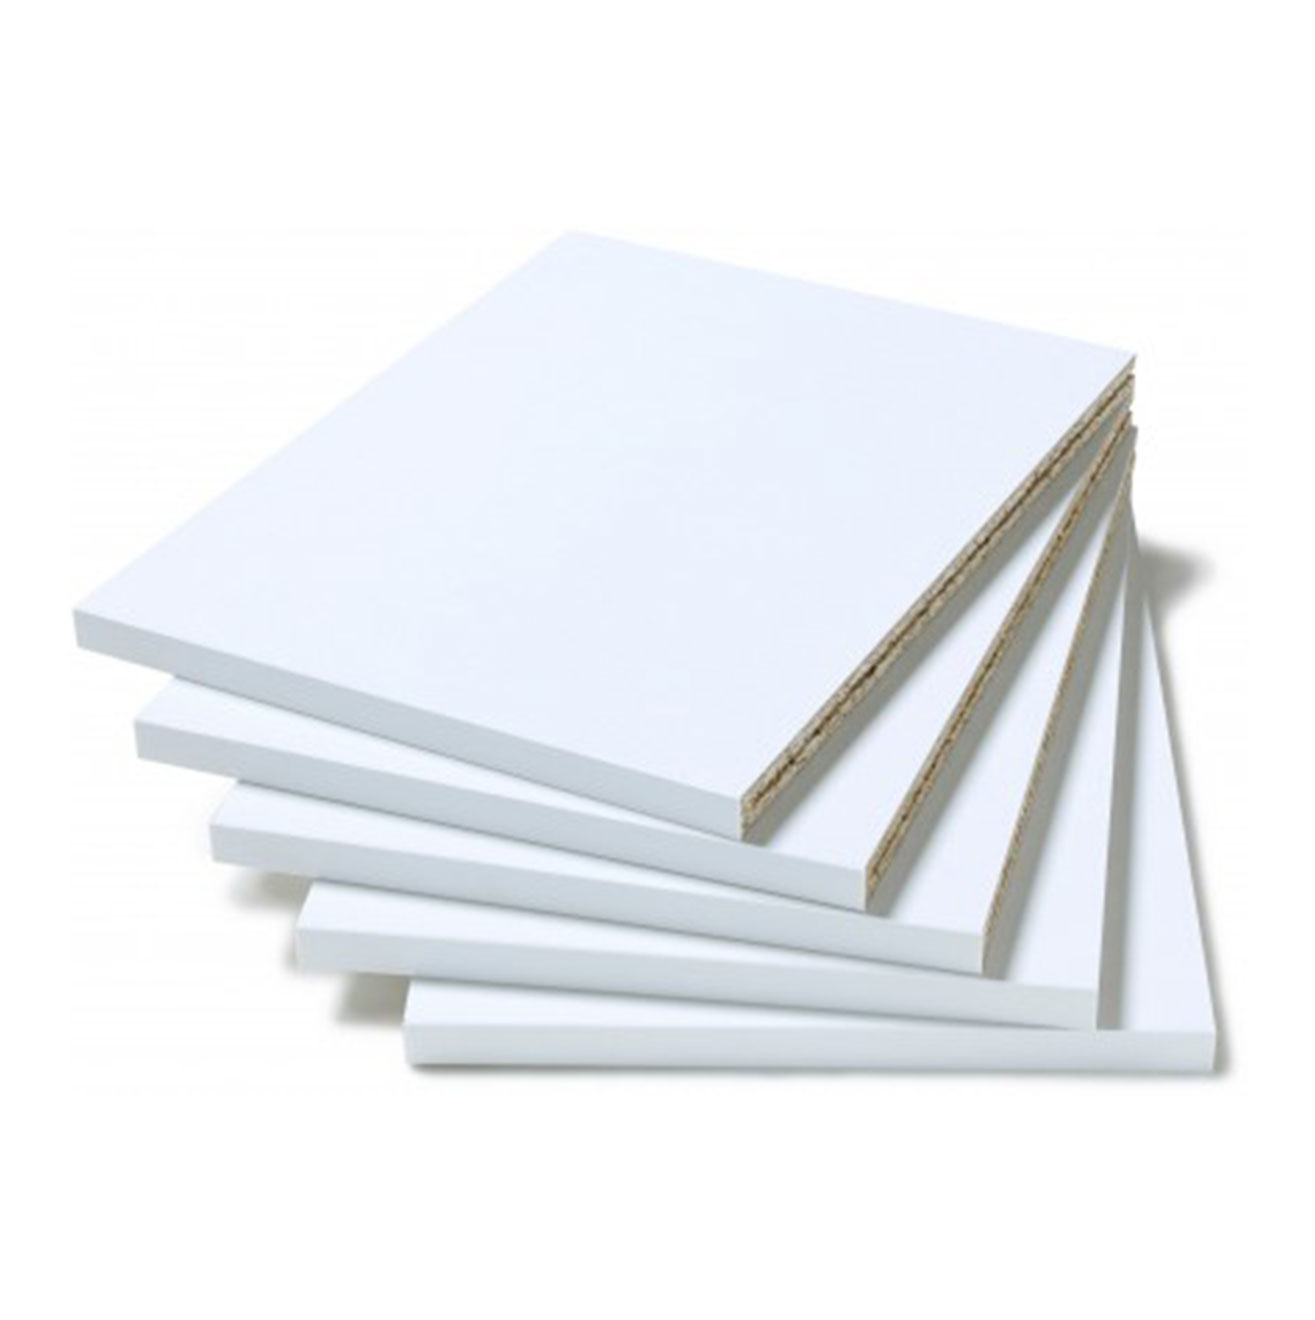 Extra shelving packs - White